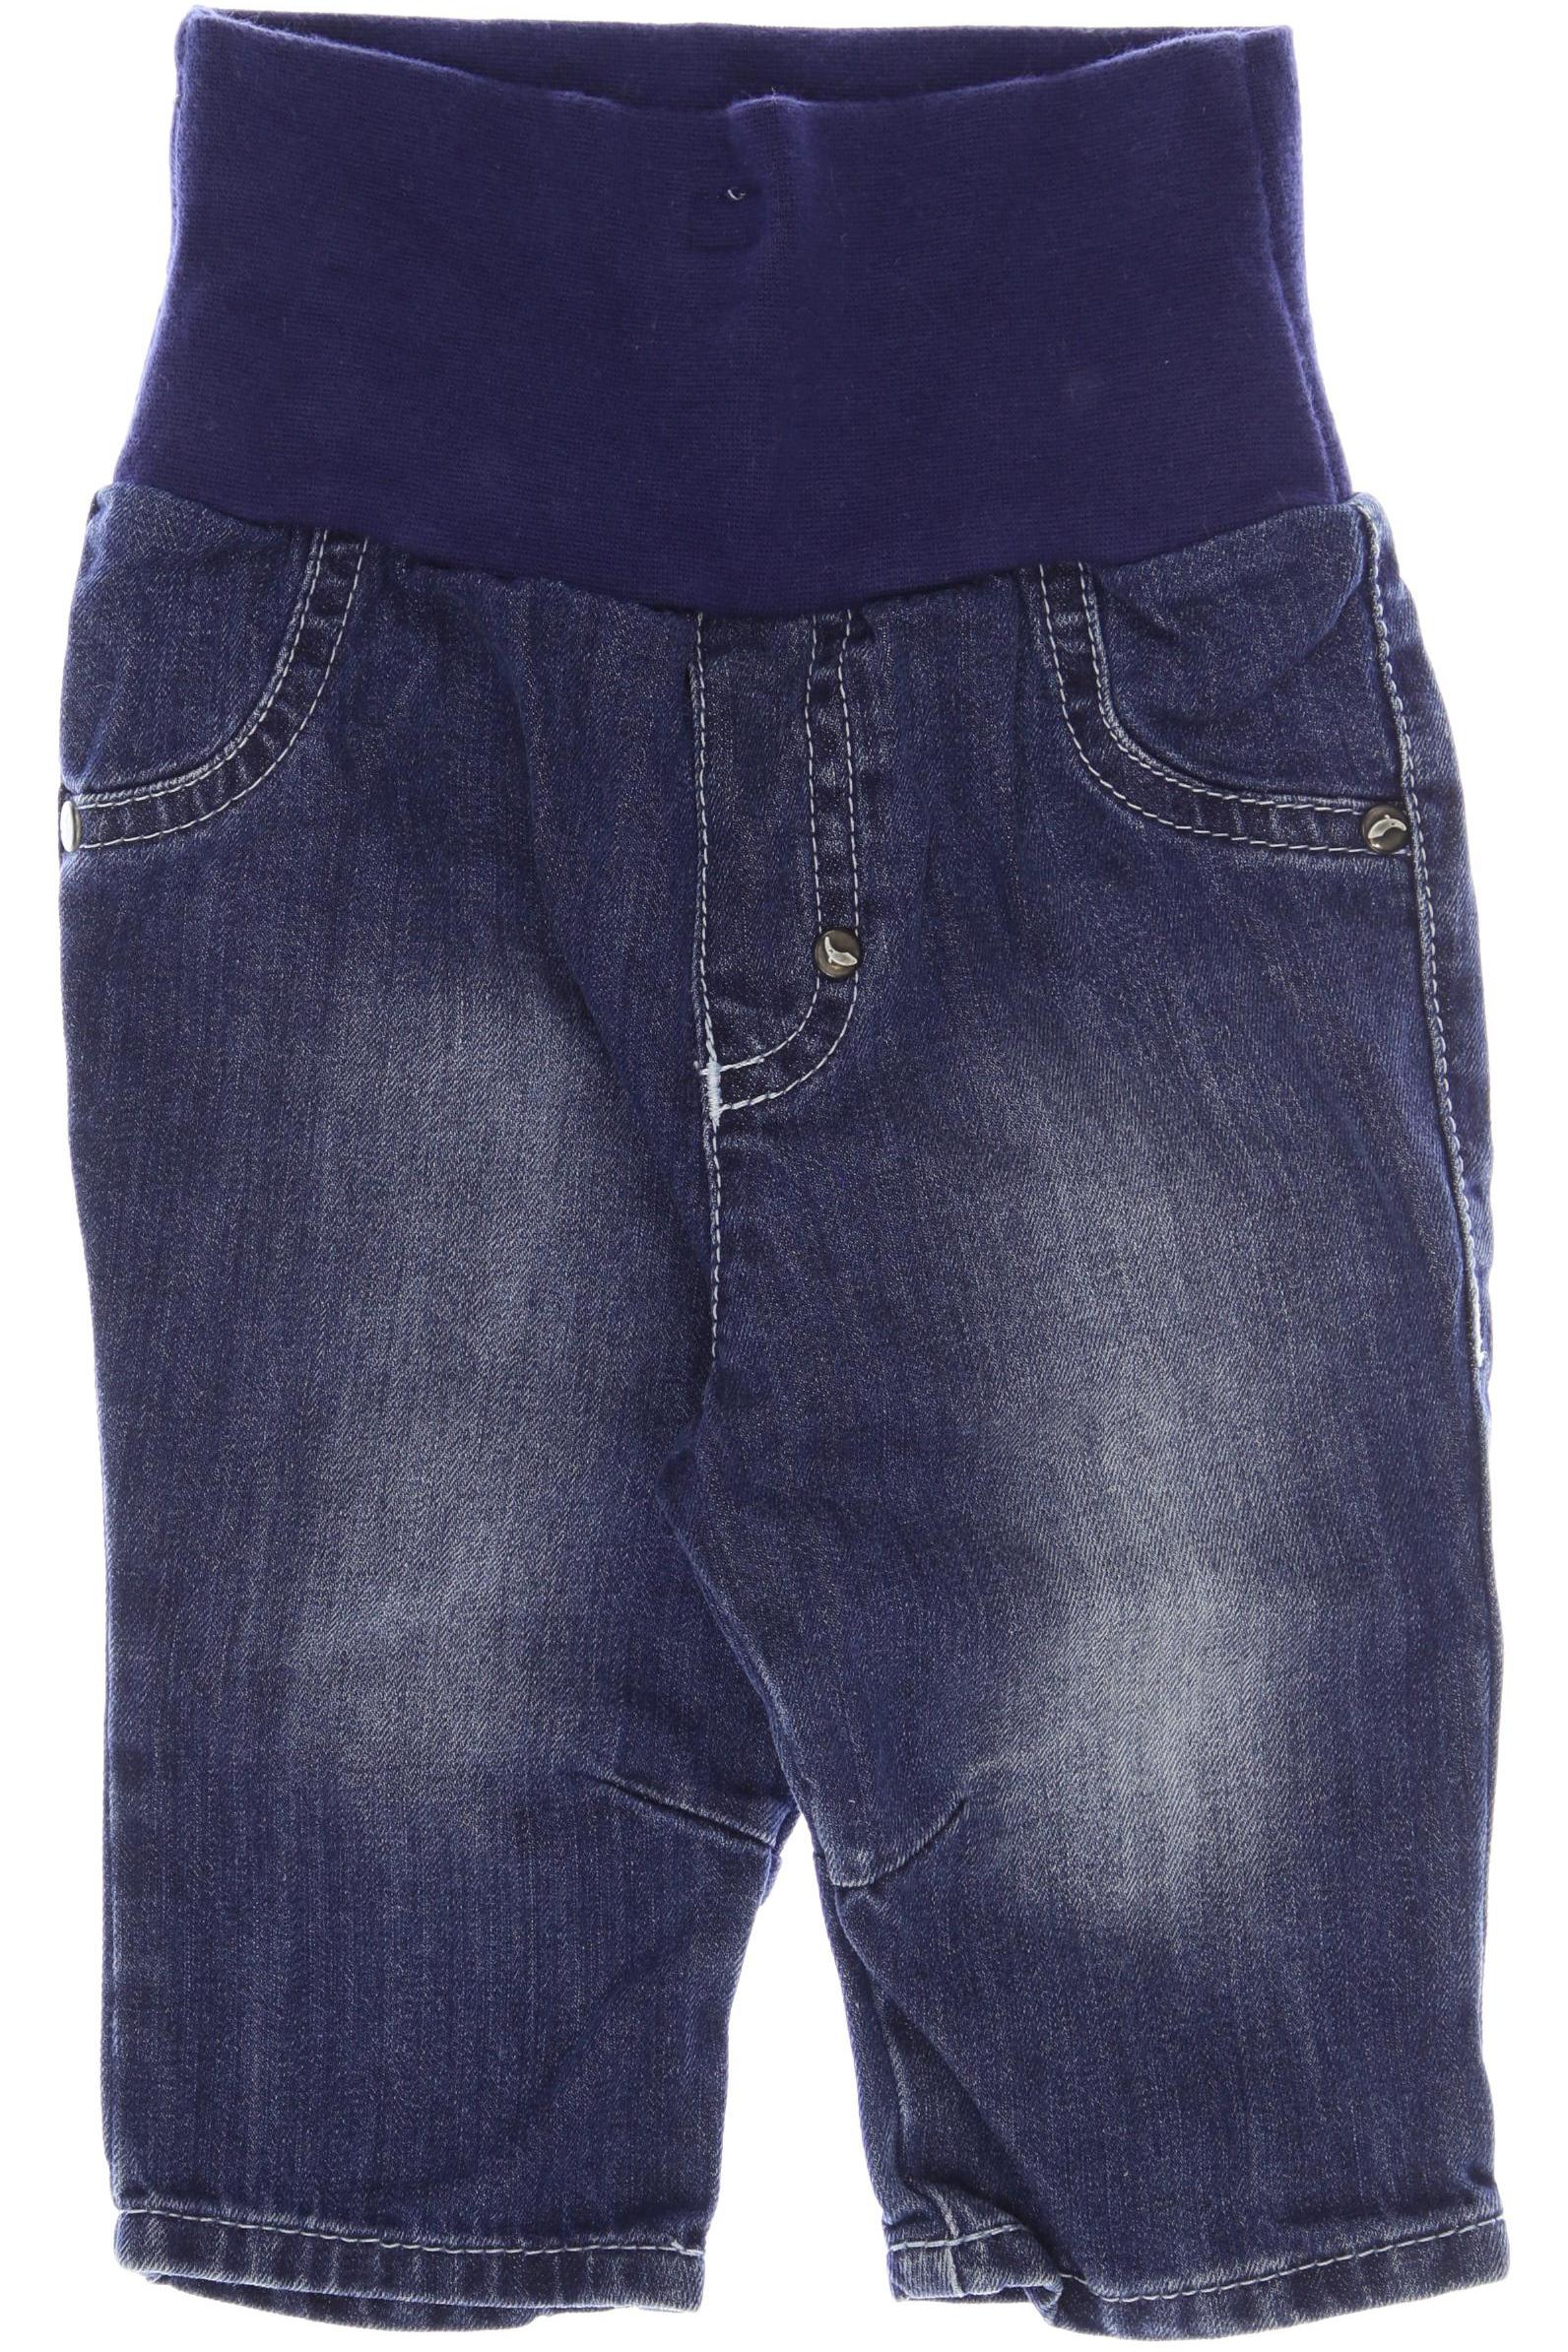 Sanetta Jungen Jeans, blau von Sanetta